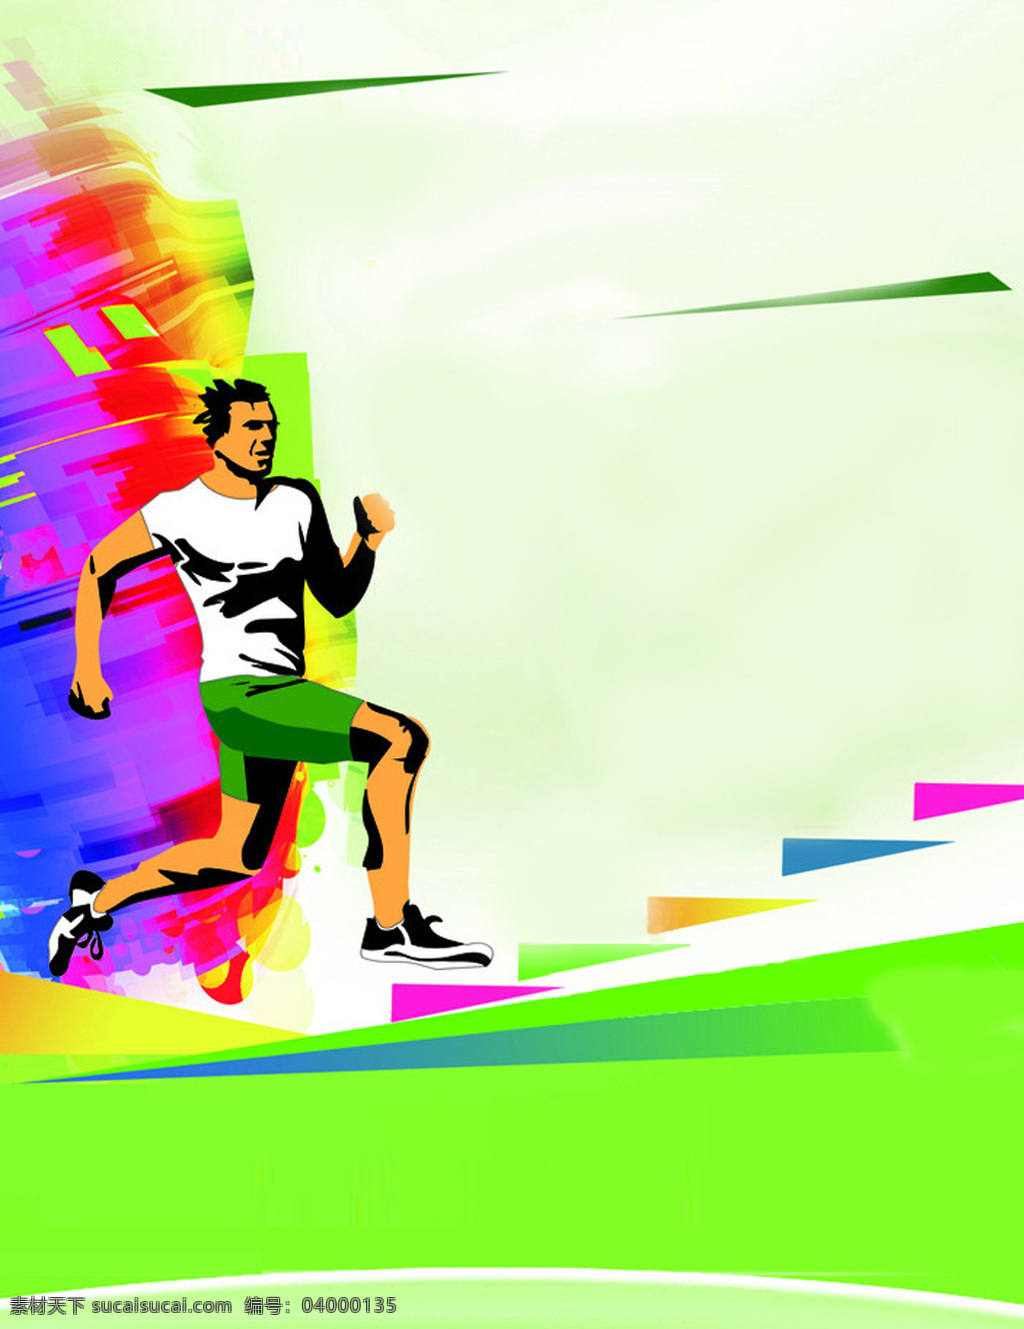 背景 彩色 跑步 台阶 体育运动 文化艺术 运动 海报 设计素材 模板下载 运动海报背景 运动员 企业文化海报